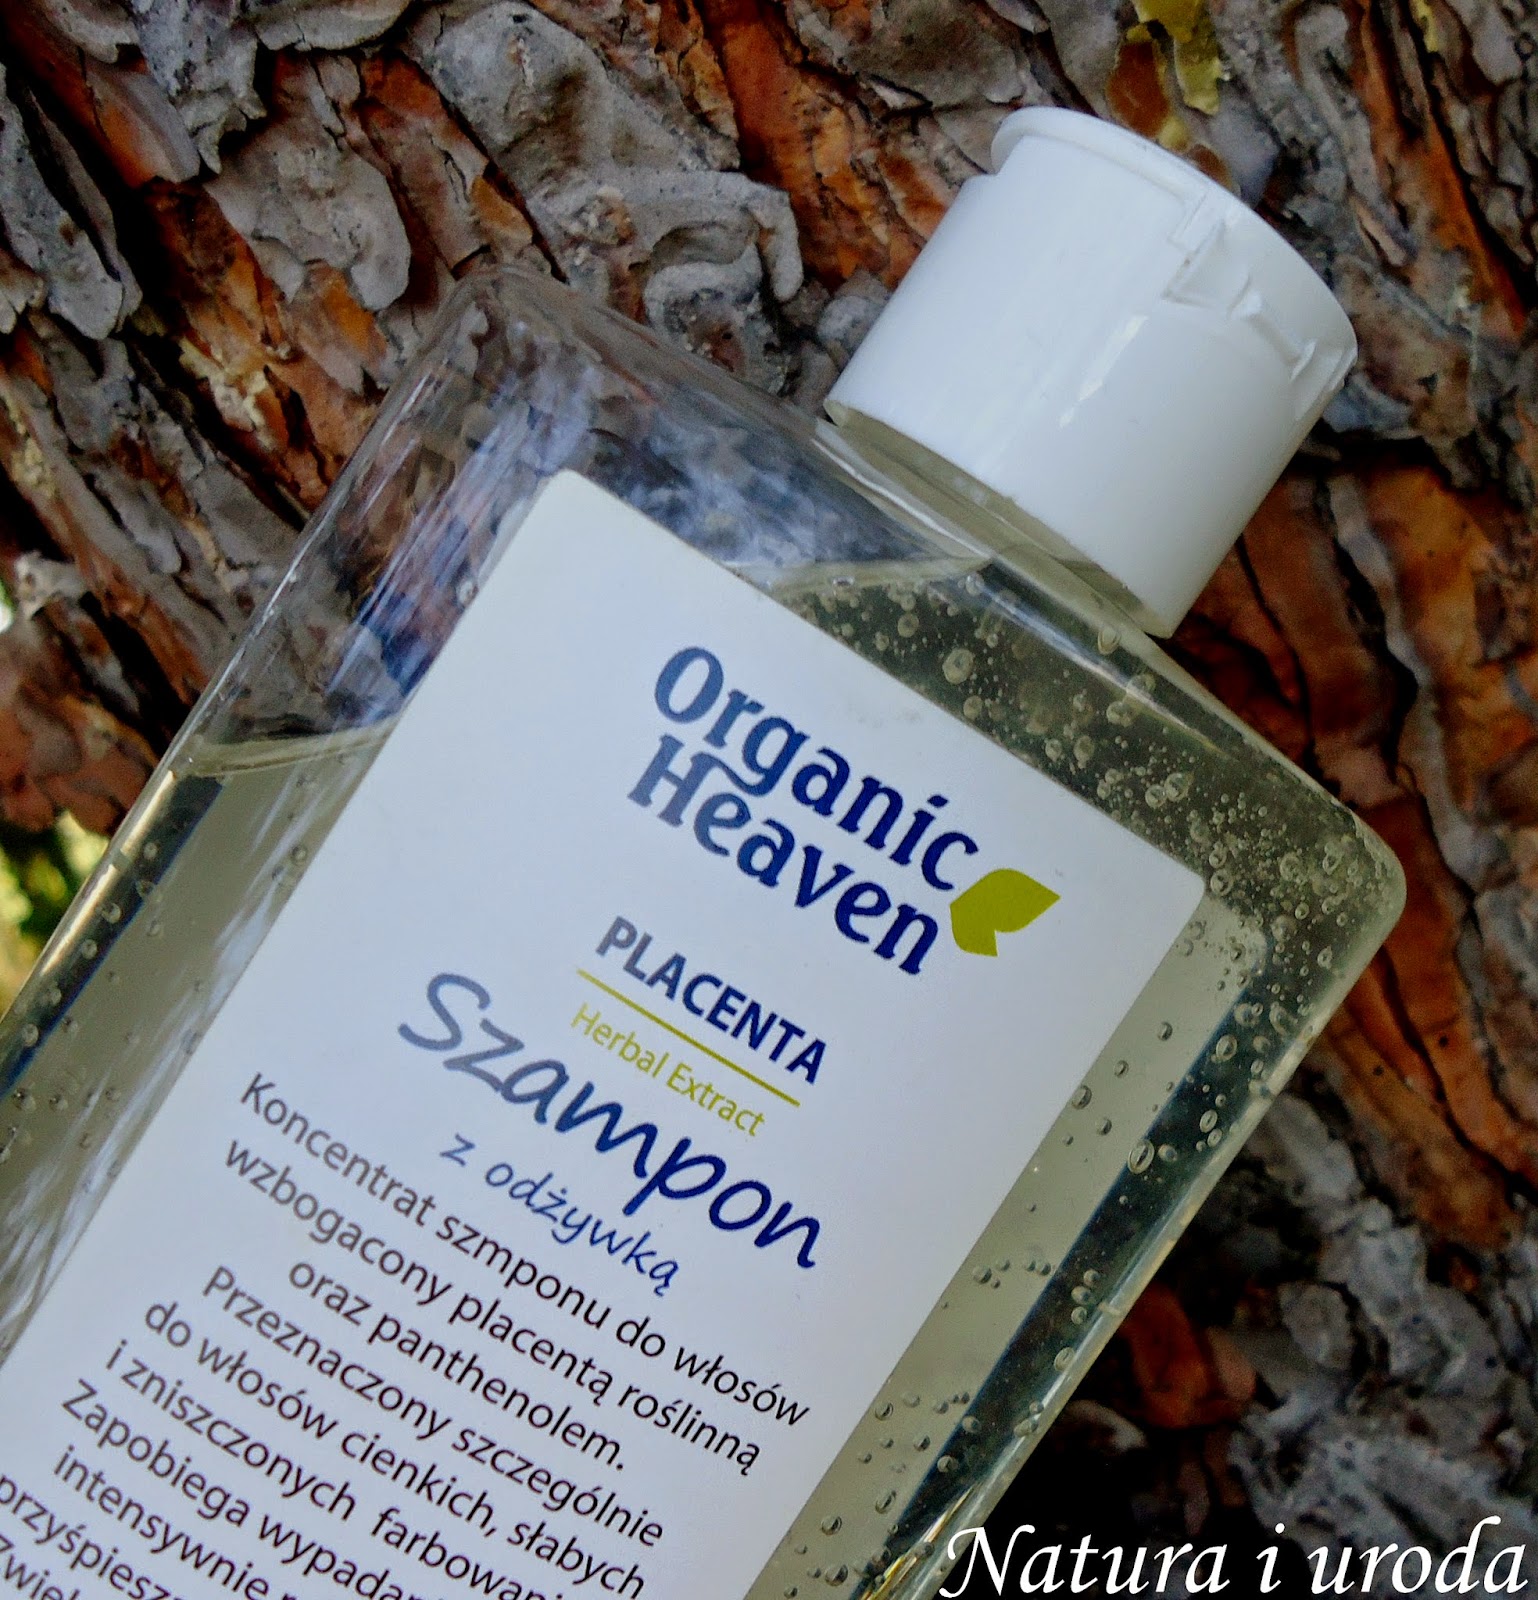 organic heaven szampon garlic czosnkowy opinie